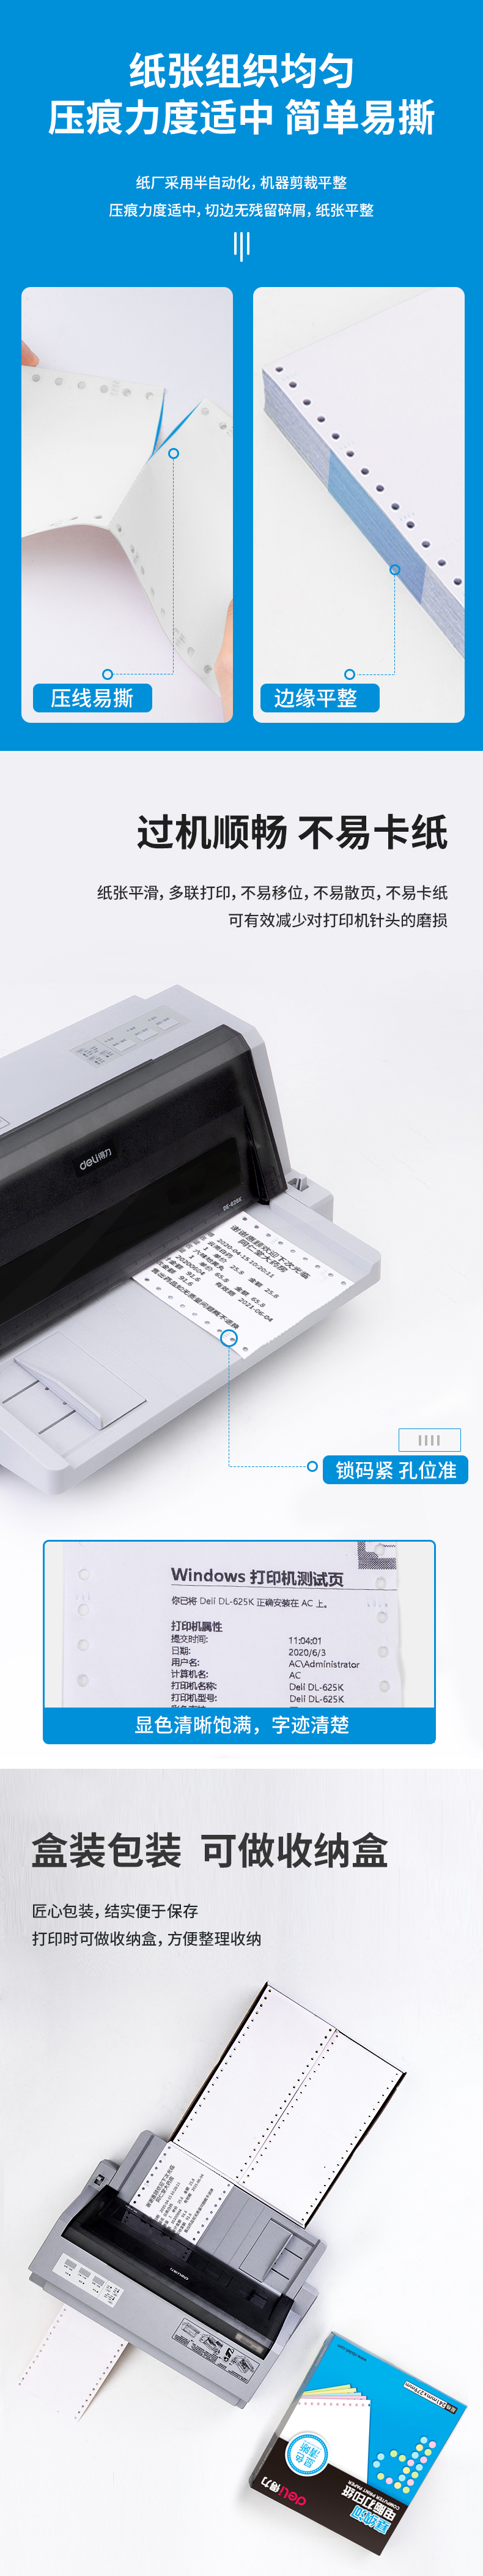 得力塞纳河N120-1电脑打印纸(13白色不撕边)(盒)_03.jpg